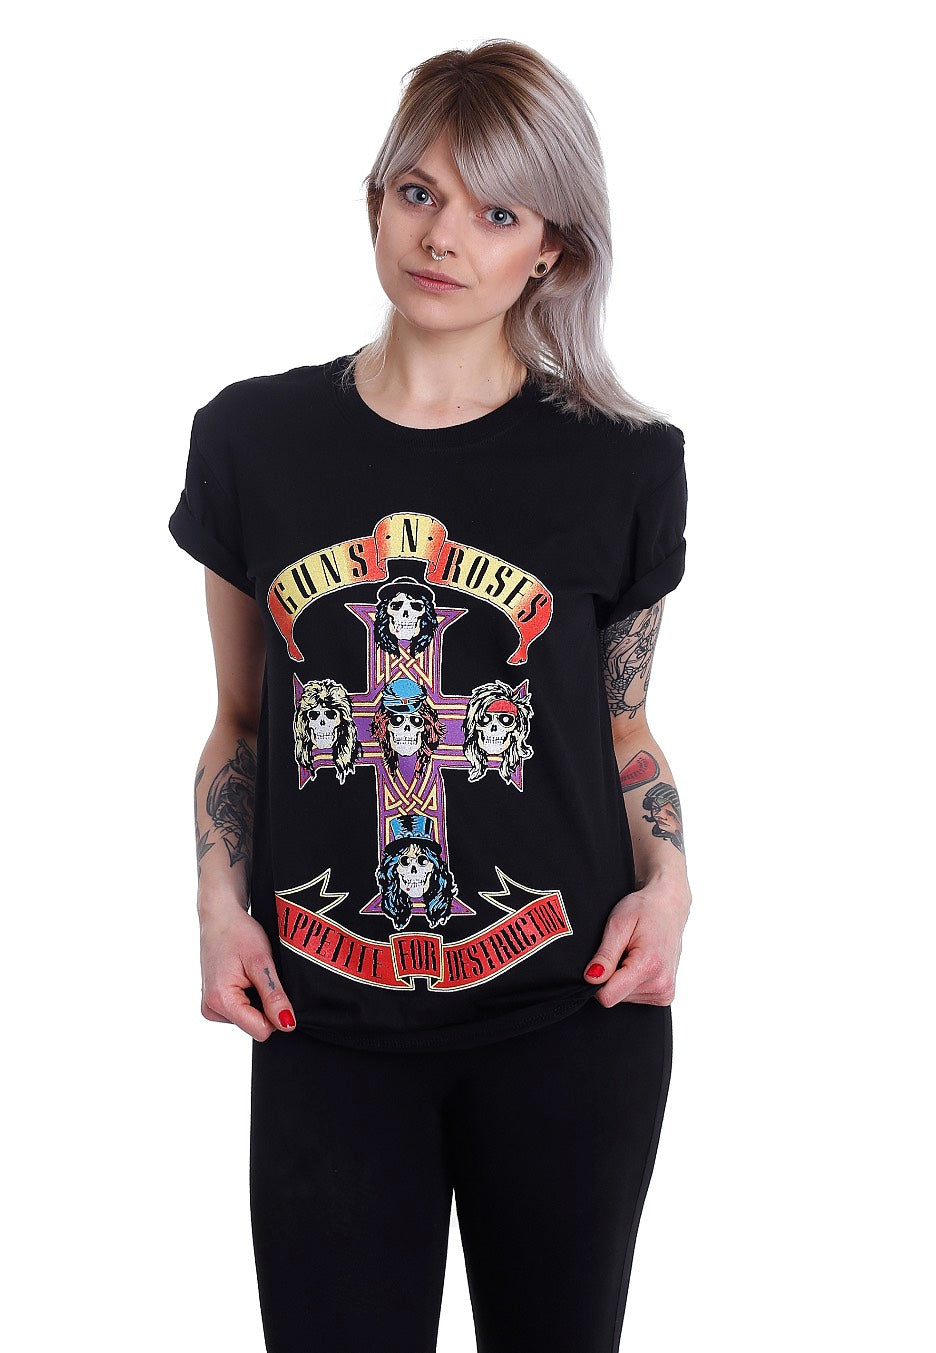 Guns N' Roses - Appetite For Destruction - T-Shirt | Women-Image